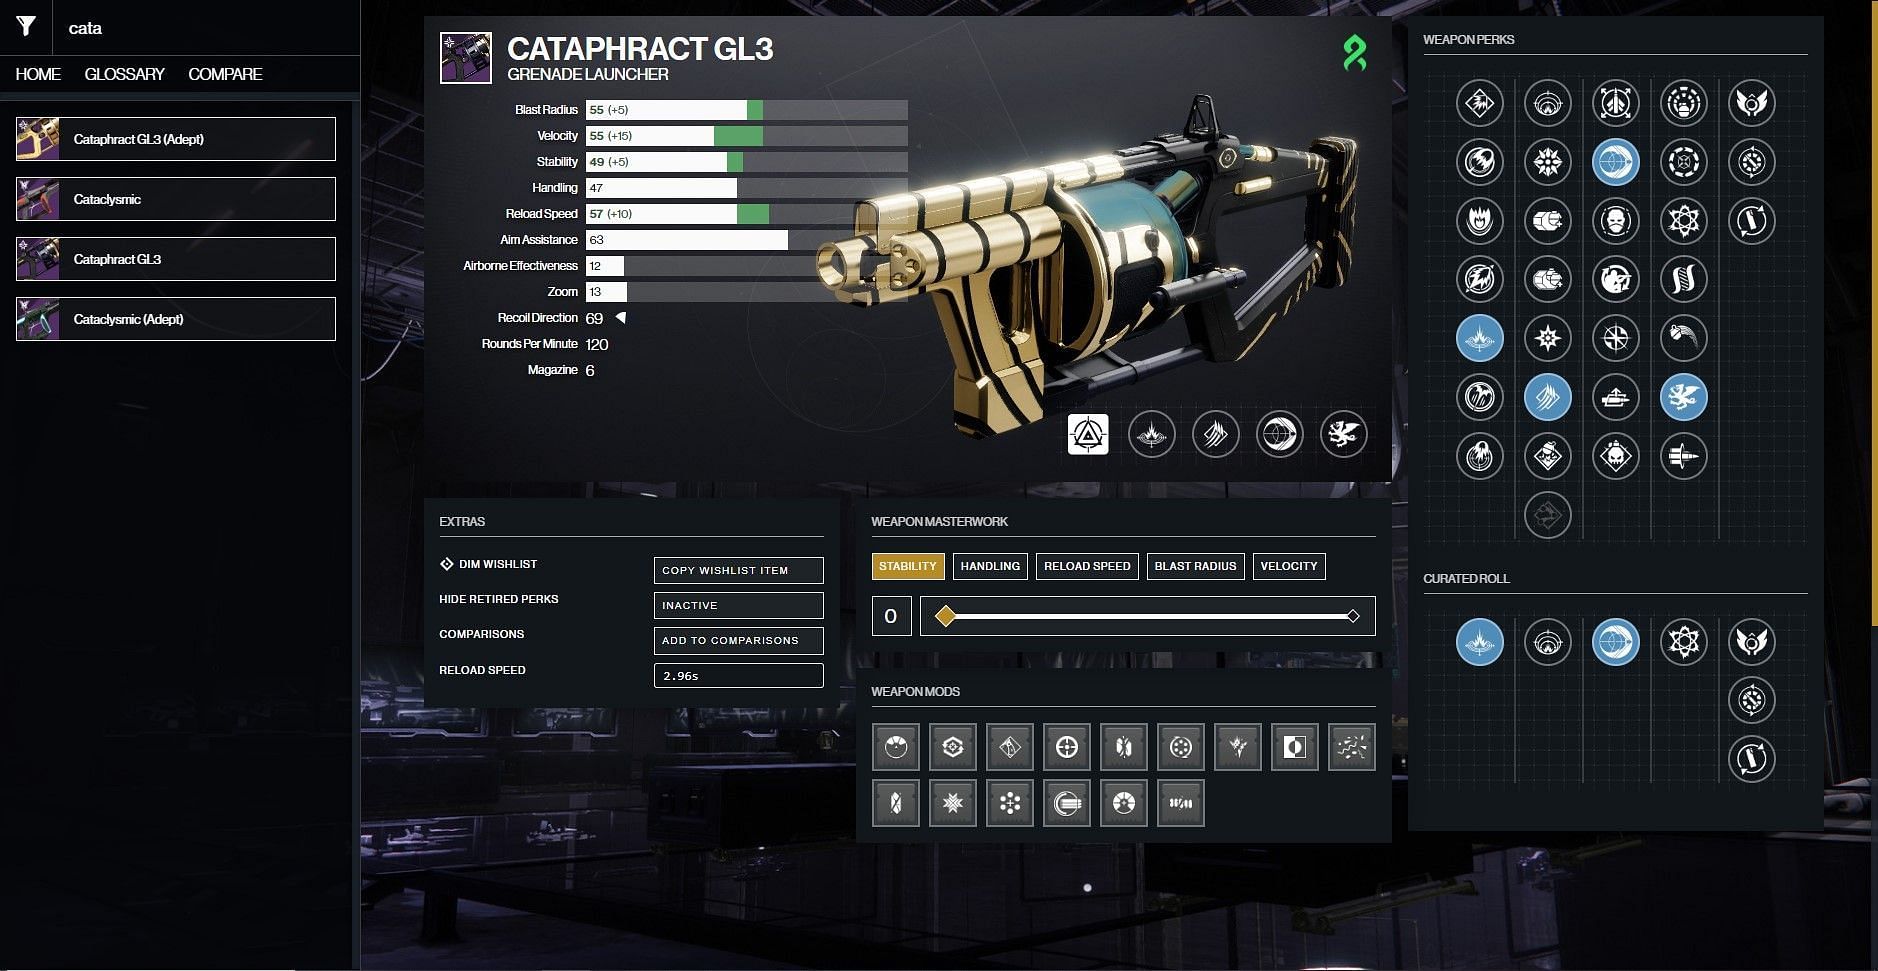 Cataphract GL3 god roll for PvP (Image via D2Gunsmith)